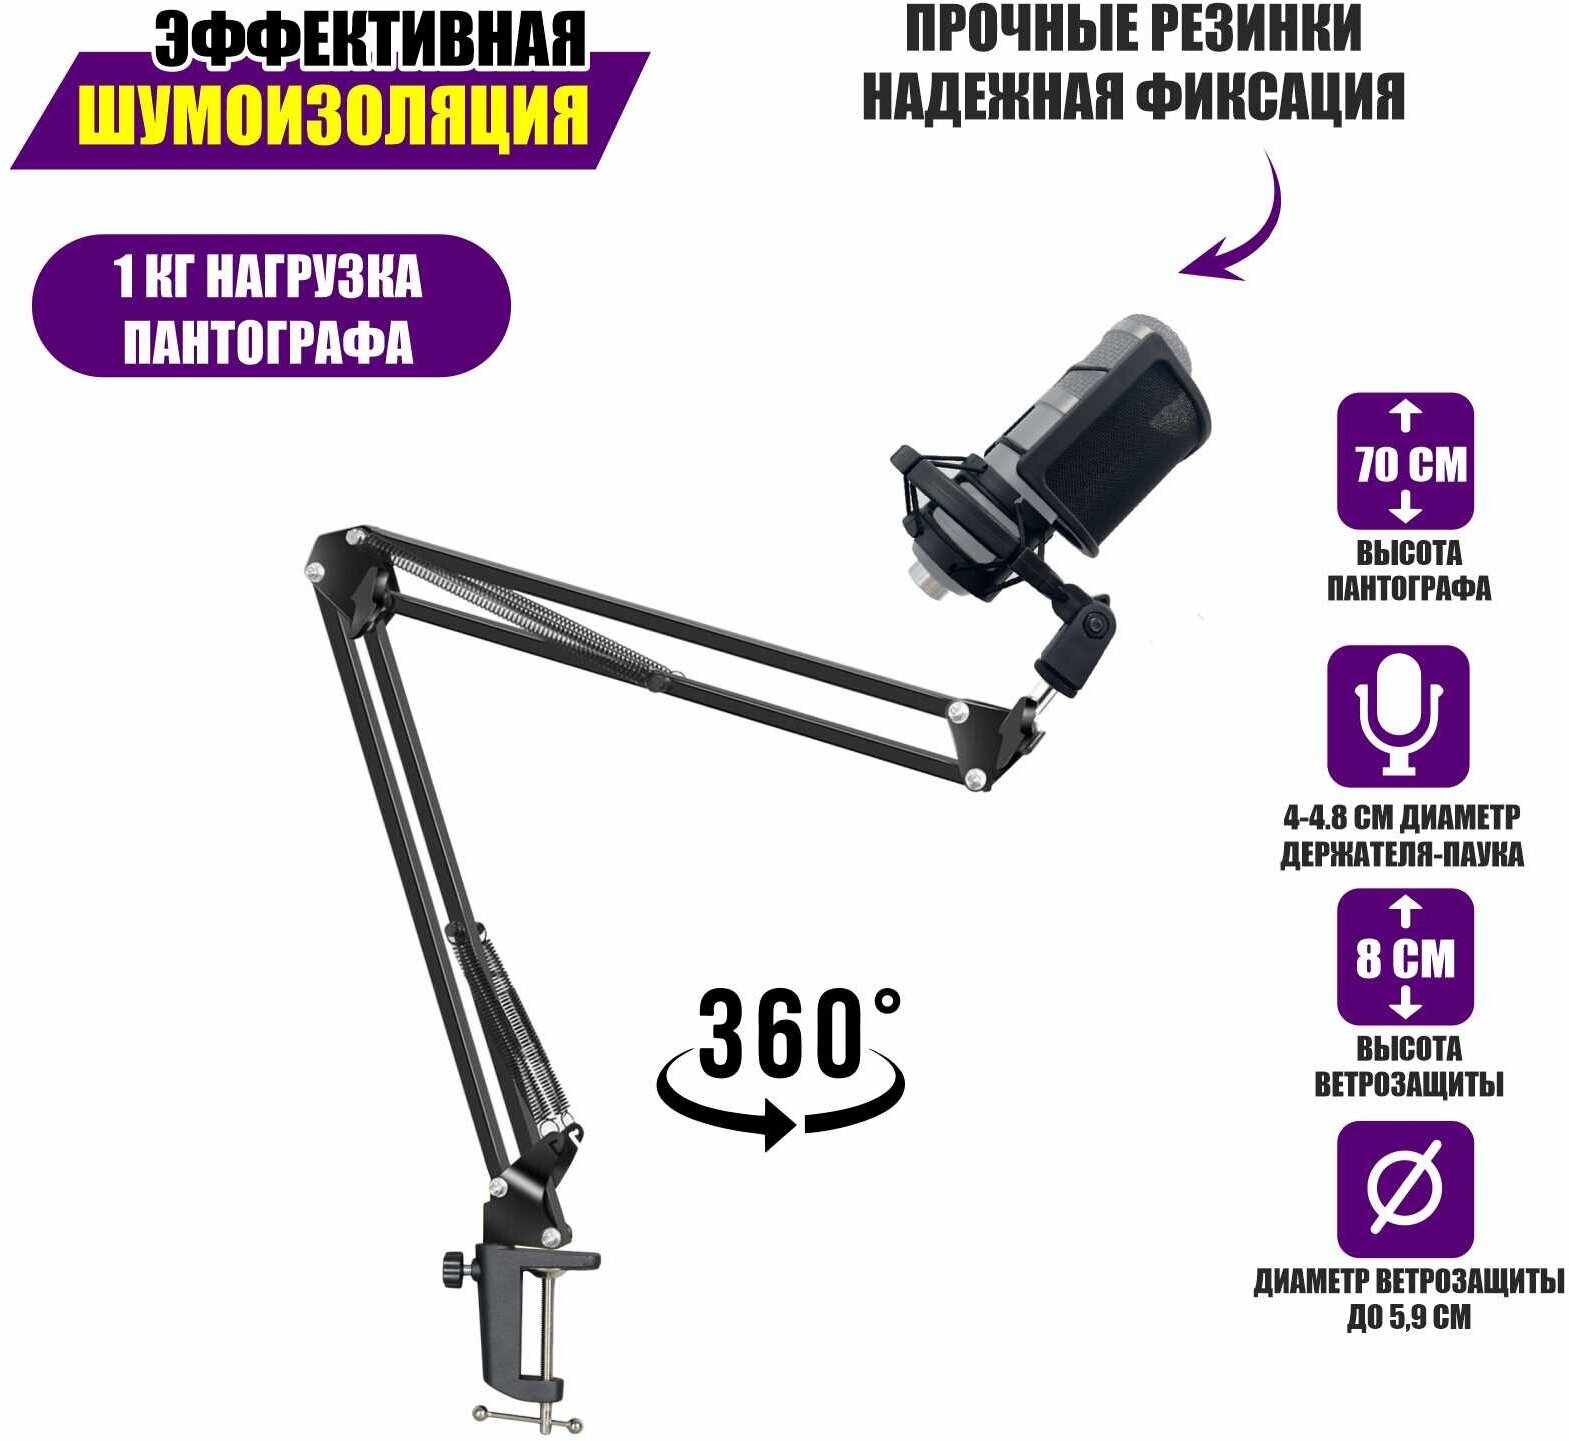 Настольная микрофонная стойка пантограф KG-VZP-P1 с ветрозащитой поп фильтром и держателем для микрофона паук P1